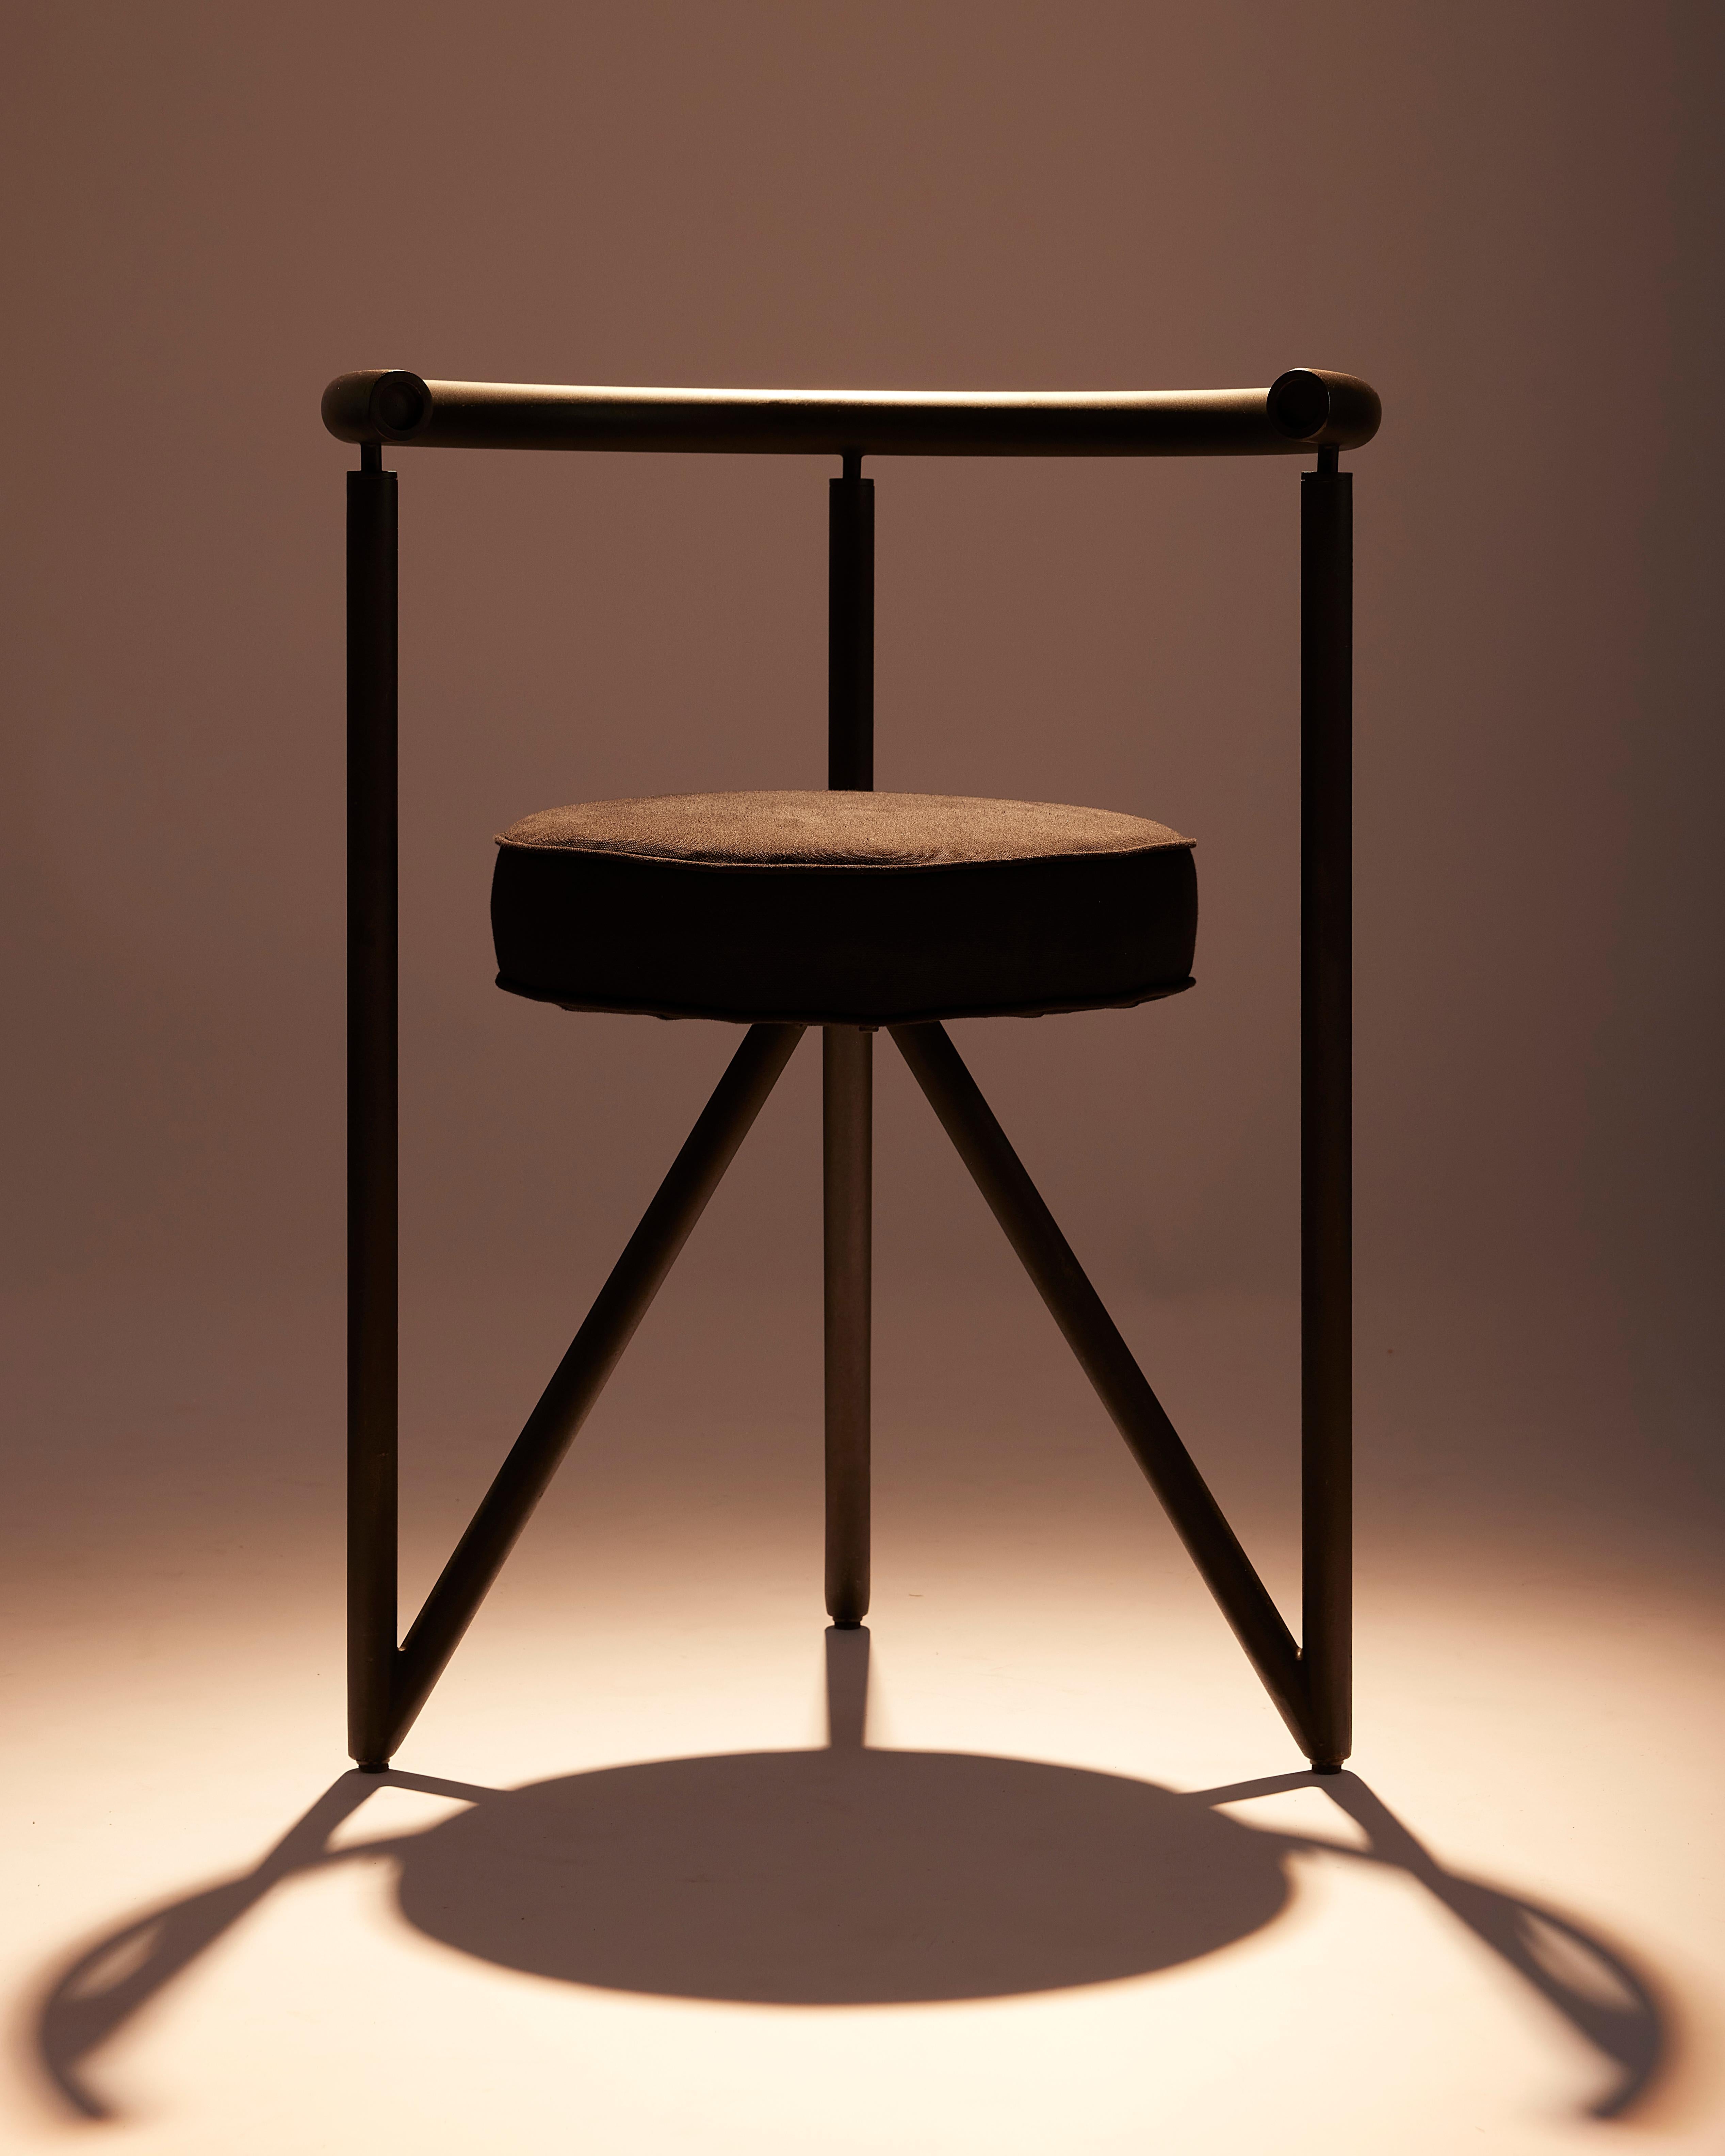 Philippe Starck (Né en 1949)
Chaises Miss Dorn, circa 1983
Disform Barcelona éditeur 
Ensemble de 6 chaises tripode
Tube de métal, toile de coton
Measures: H. 70 cm - L. 53 cm - P. 48 cm.